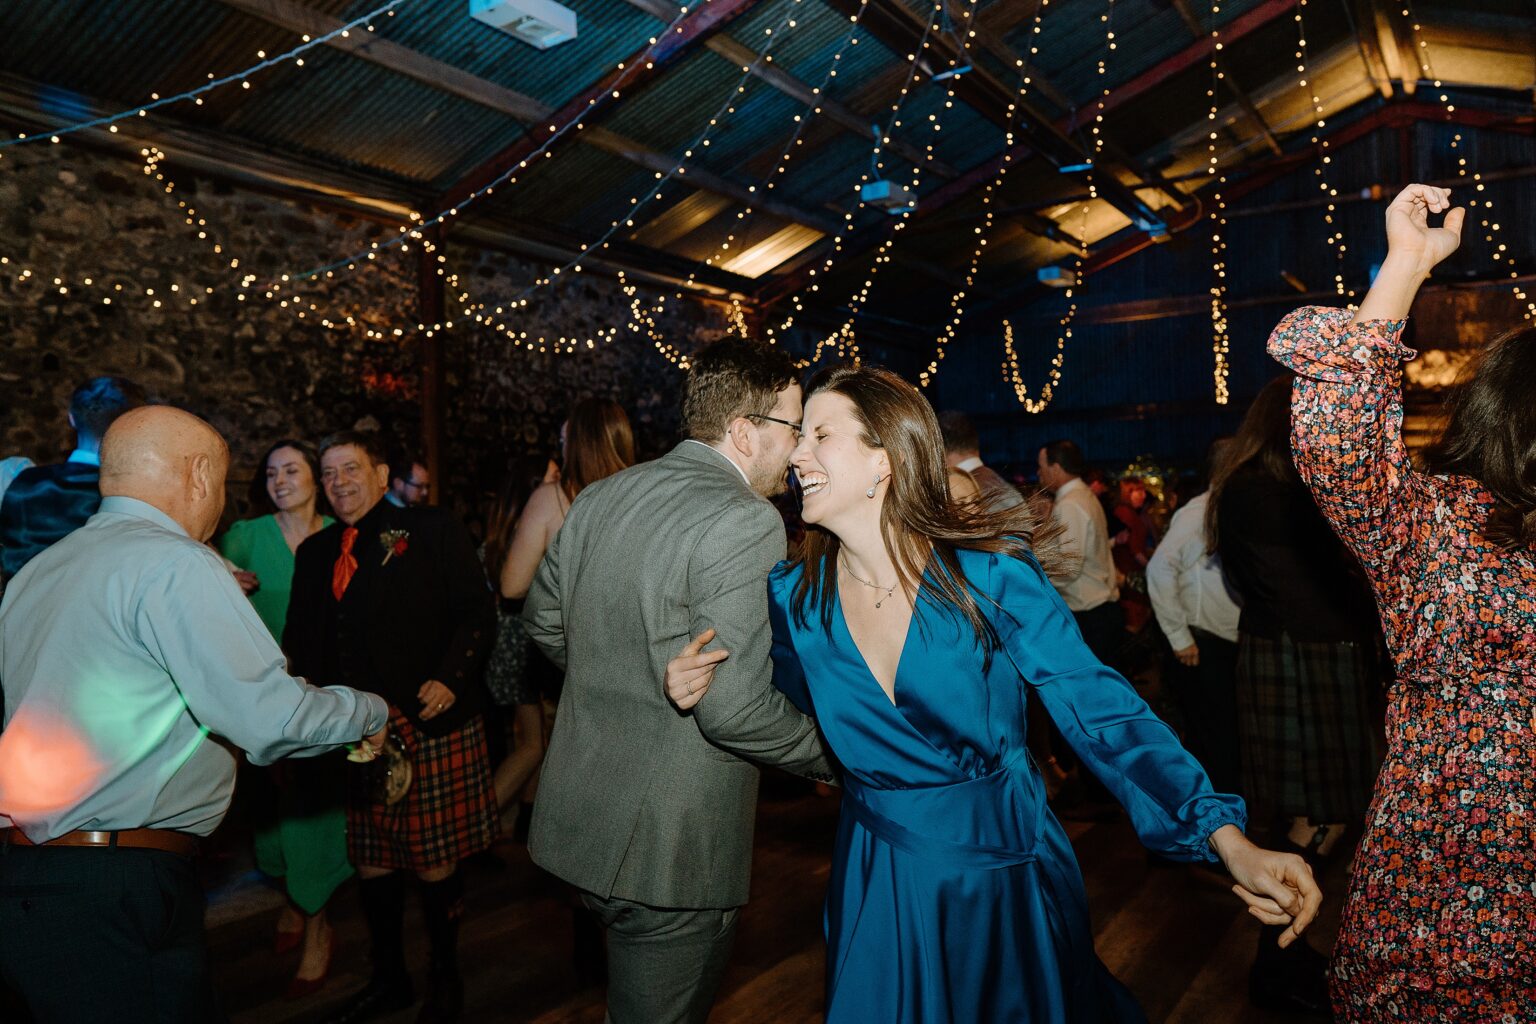 guests dancing beneath festoon lighting at a wedding reception at a farm wedding venue near glasgow scotland